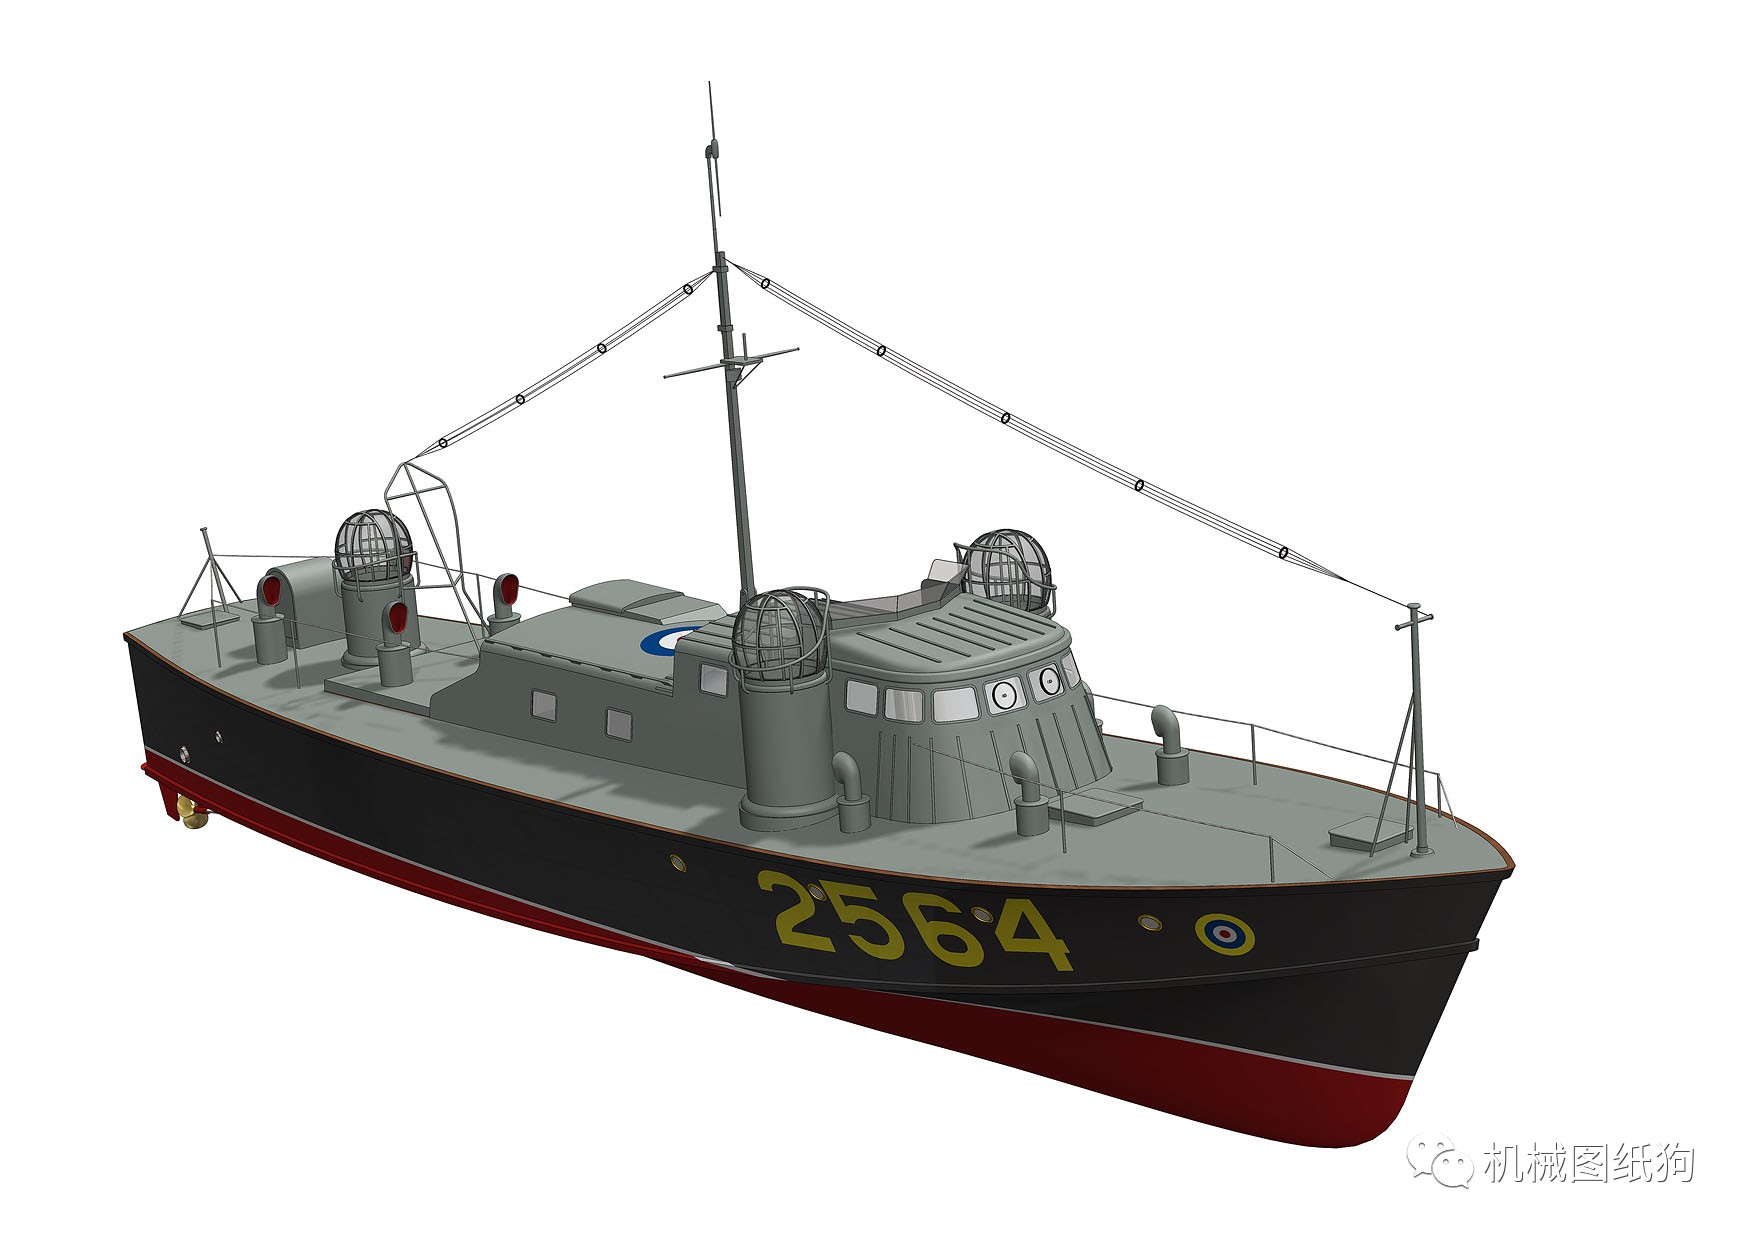 【海洋船舶】PANAIR Petersen快艇结构3D图纸 STEP格式_船舶_海洋-仿真秀干货文章